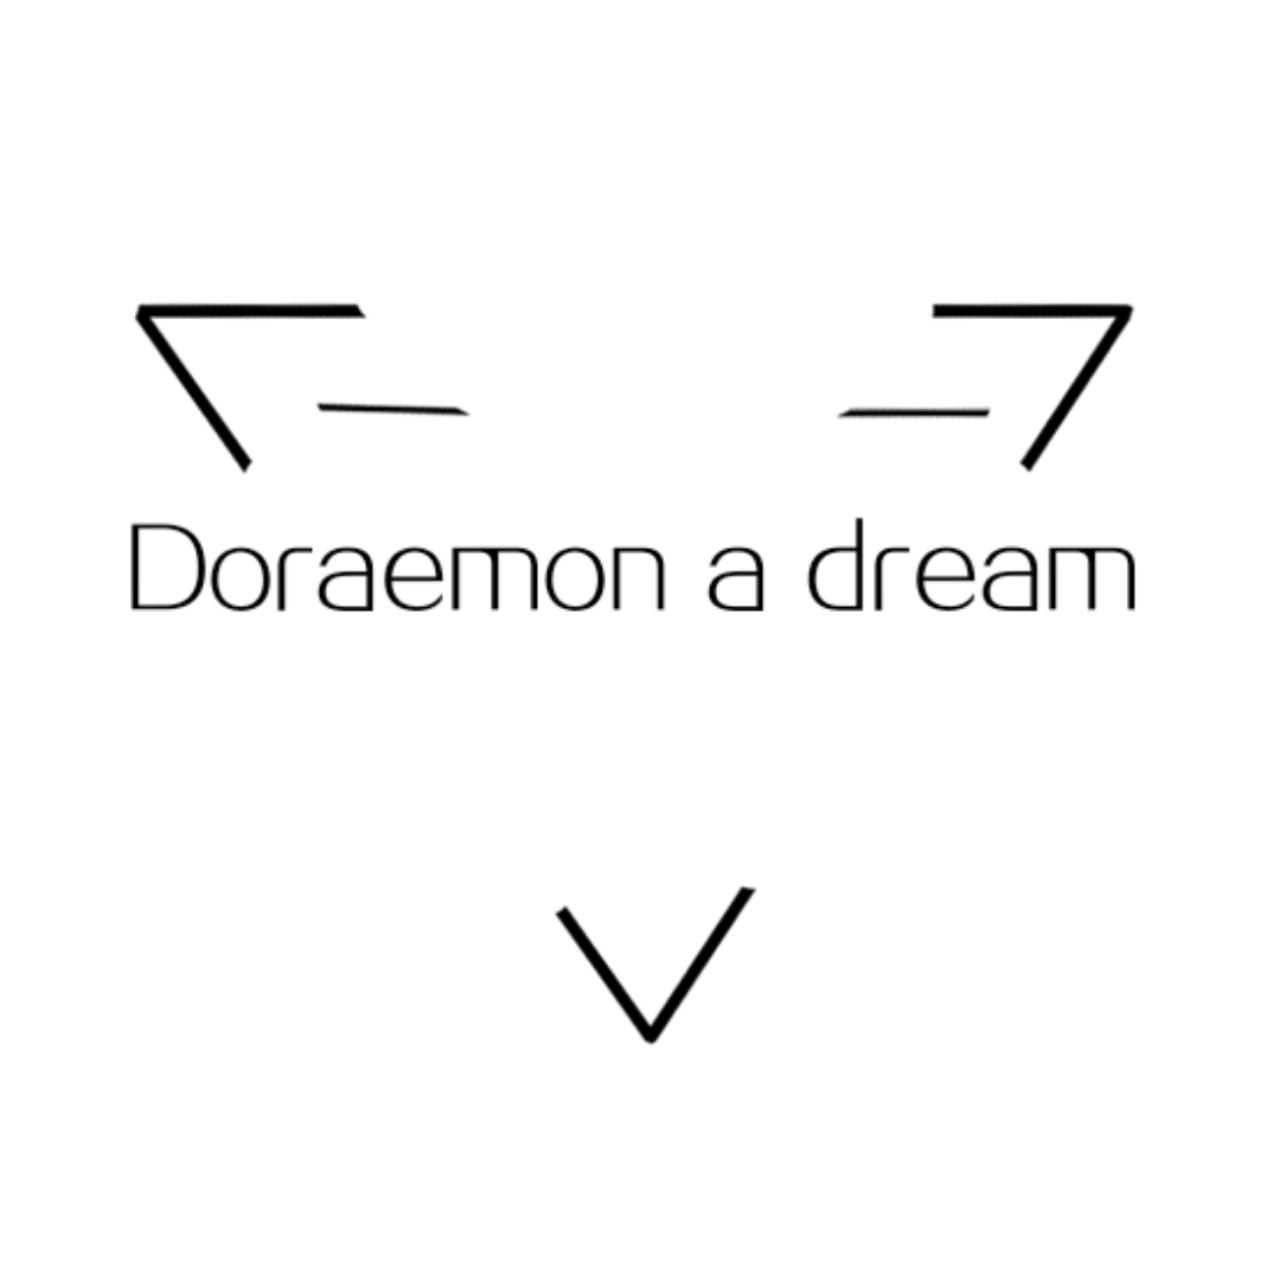 Doraemon a dream